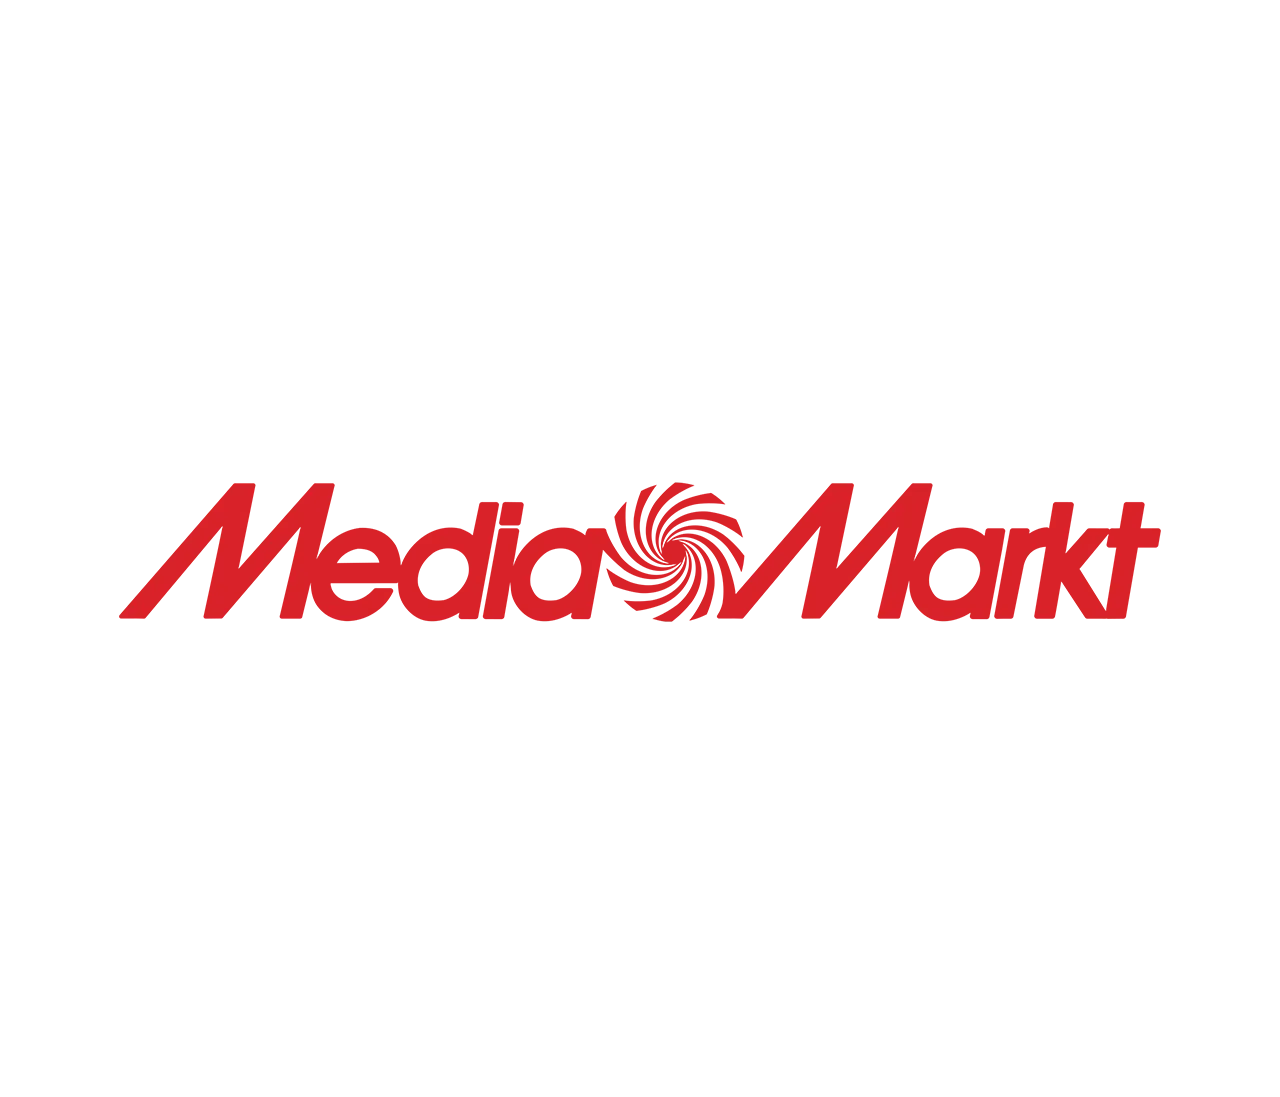 MediaMarkt result 1